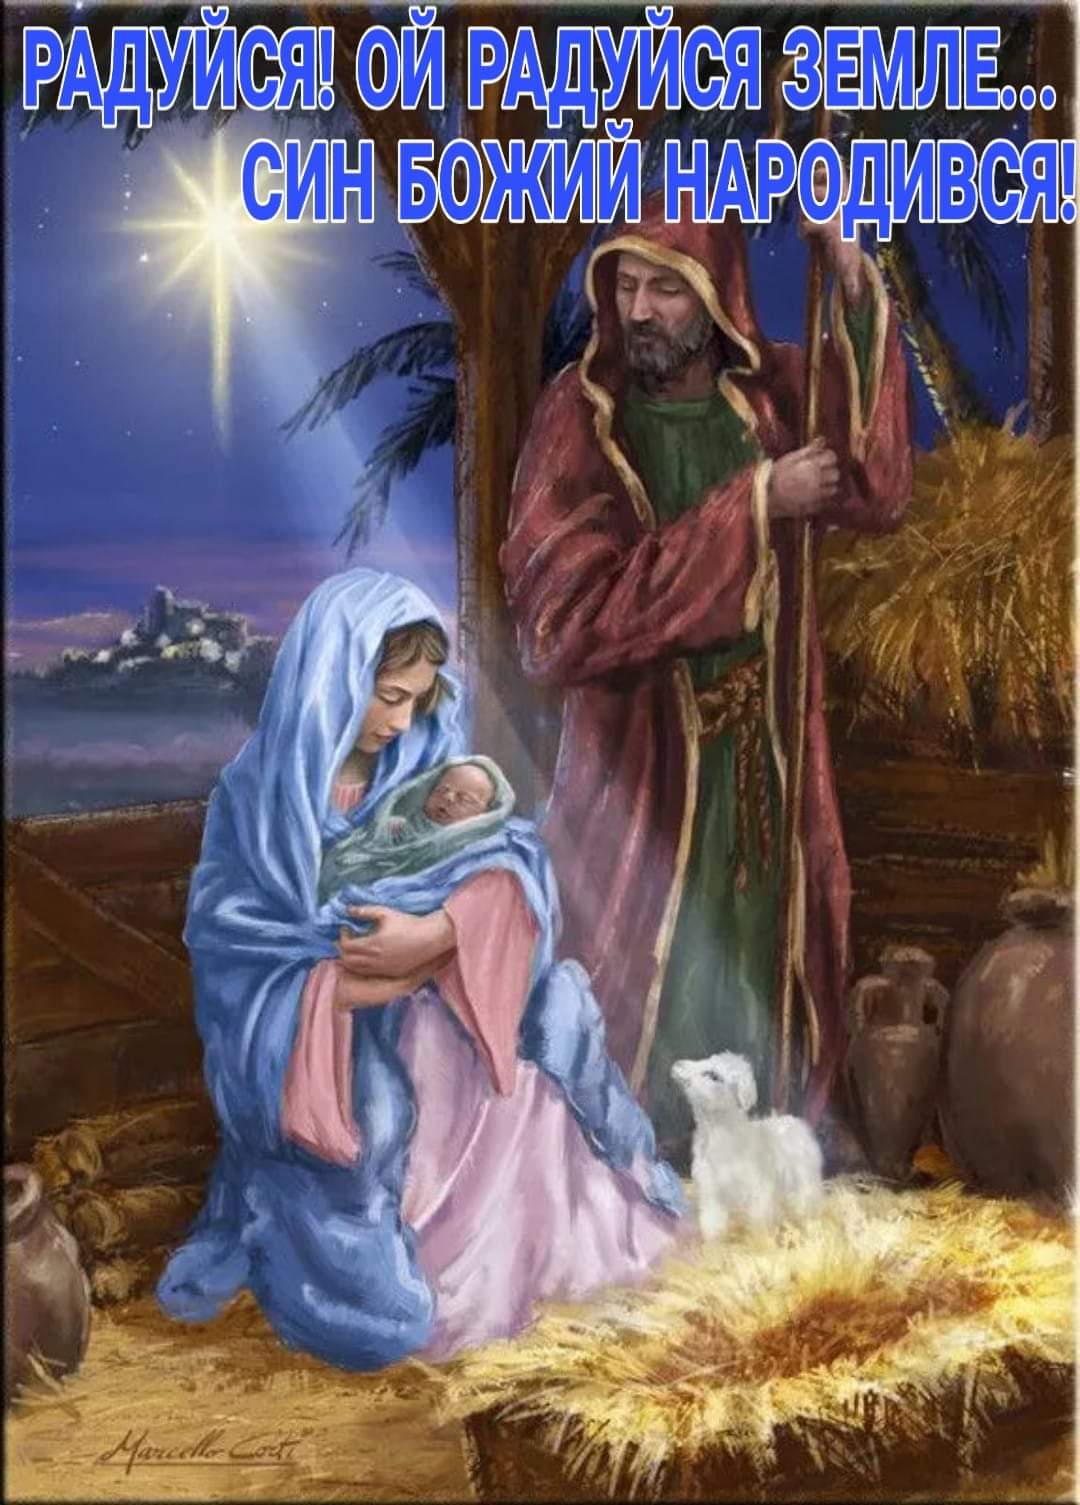 Радуйся, ой радуйся земле... Син Божий народився... - найкращі привітання з Різдвом Христовим в картинках